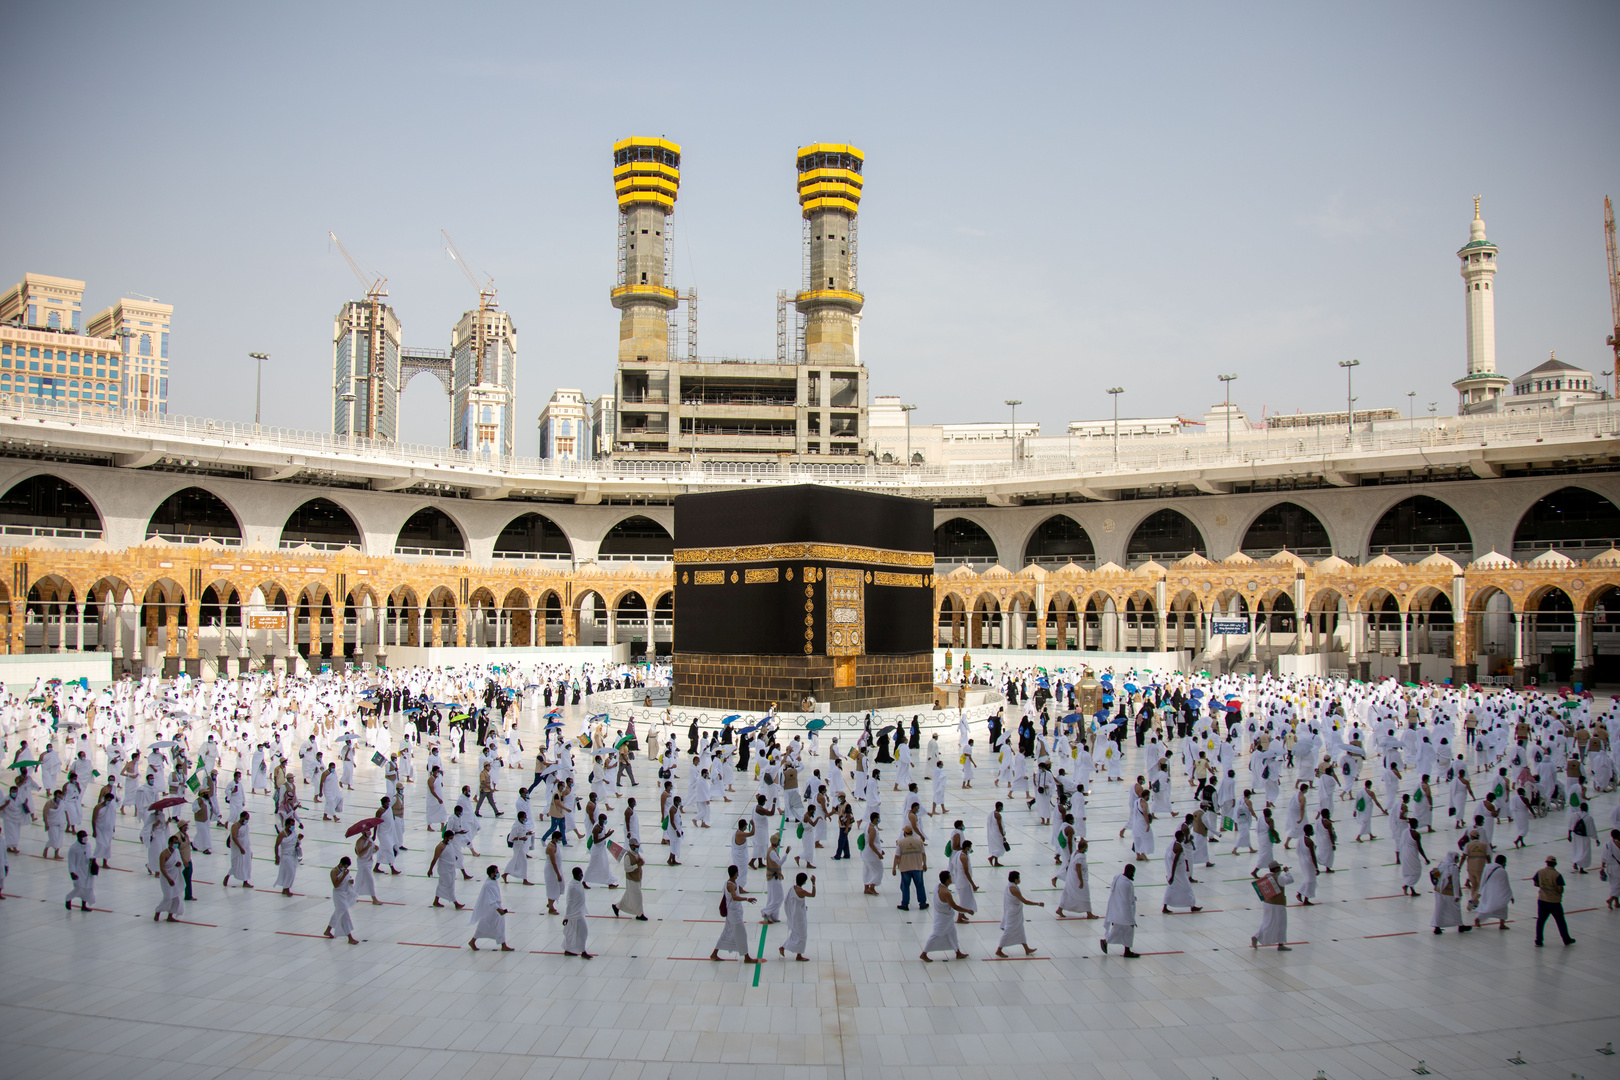 السعودية تقرر رفع الطاقة الاستيعابية للمسجد الحرام وتحدد كيفية أخذ تصاريح العمرة والصلاة فيه